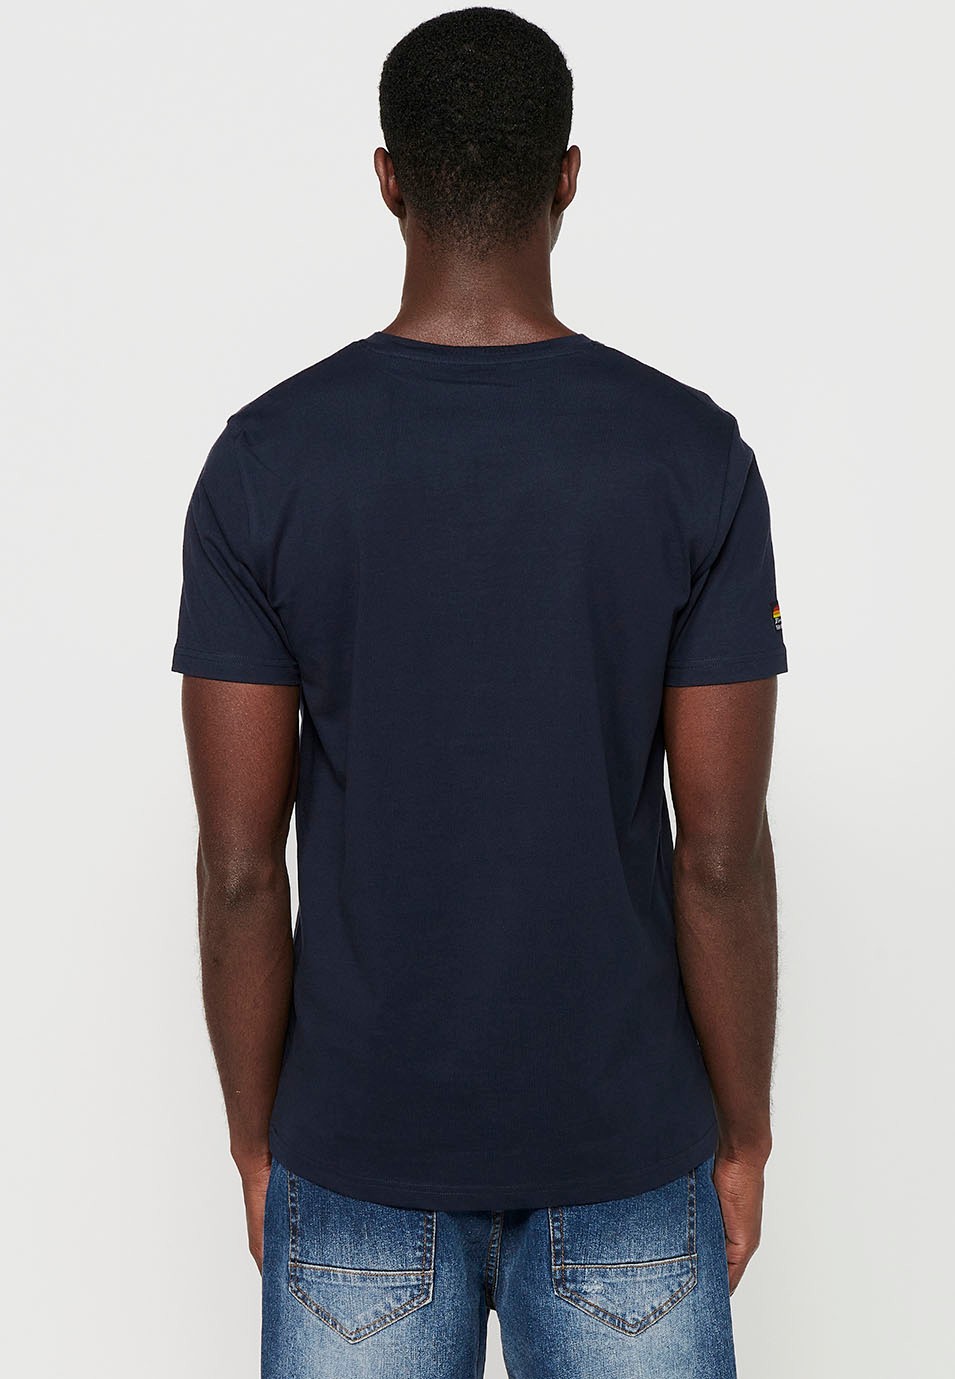 T-shirt en coton à manches courtes avec imprimé vélo sur le devant, coloris marine pour homme 7